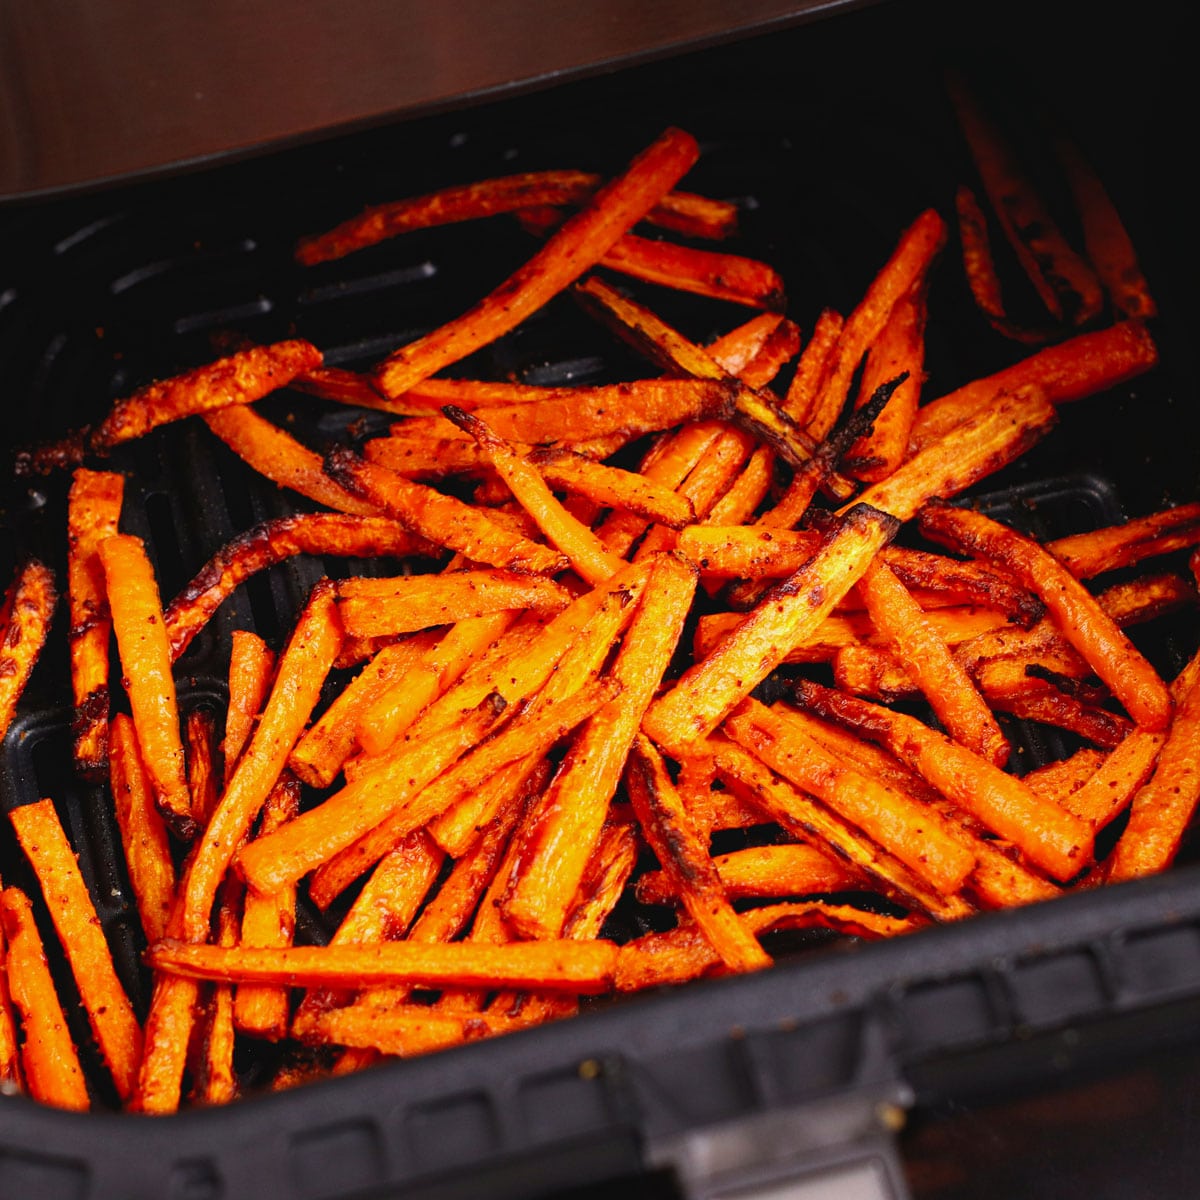 Roasting carrot fries in air fryer